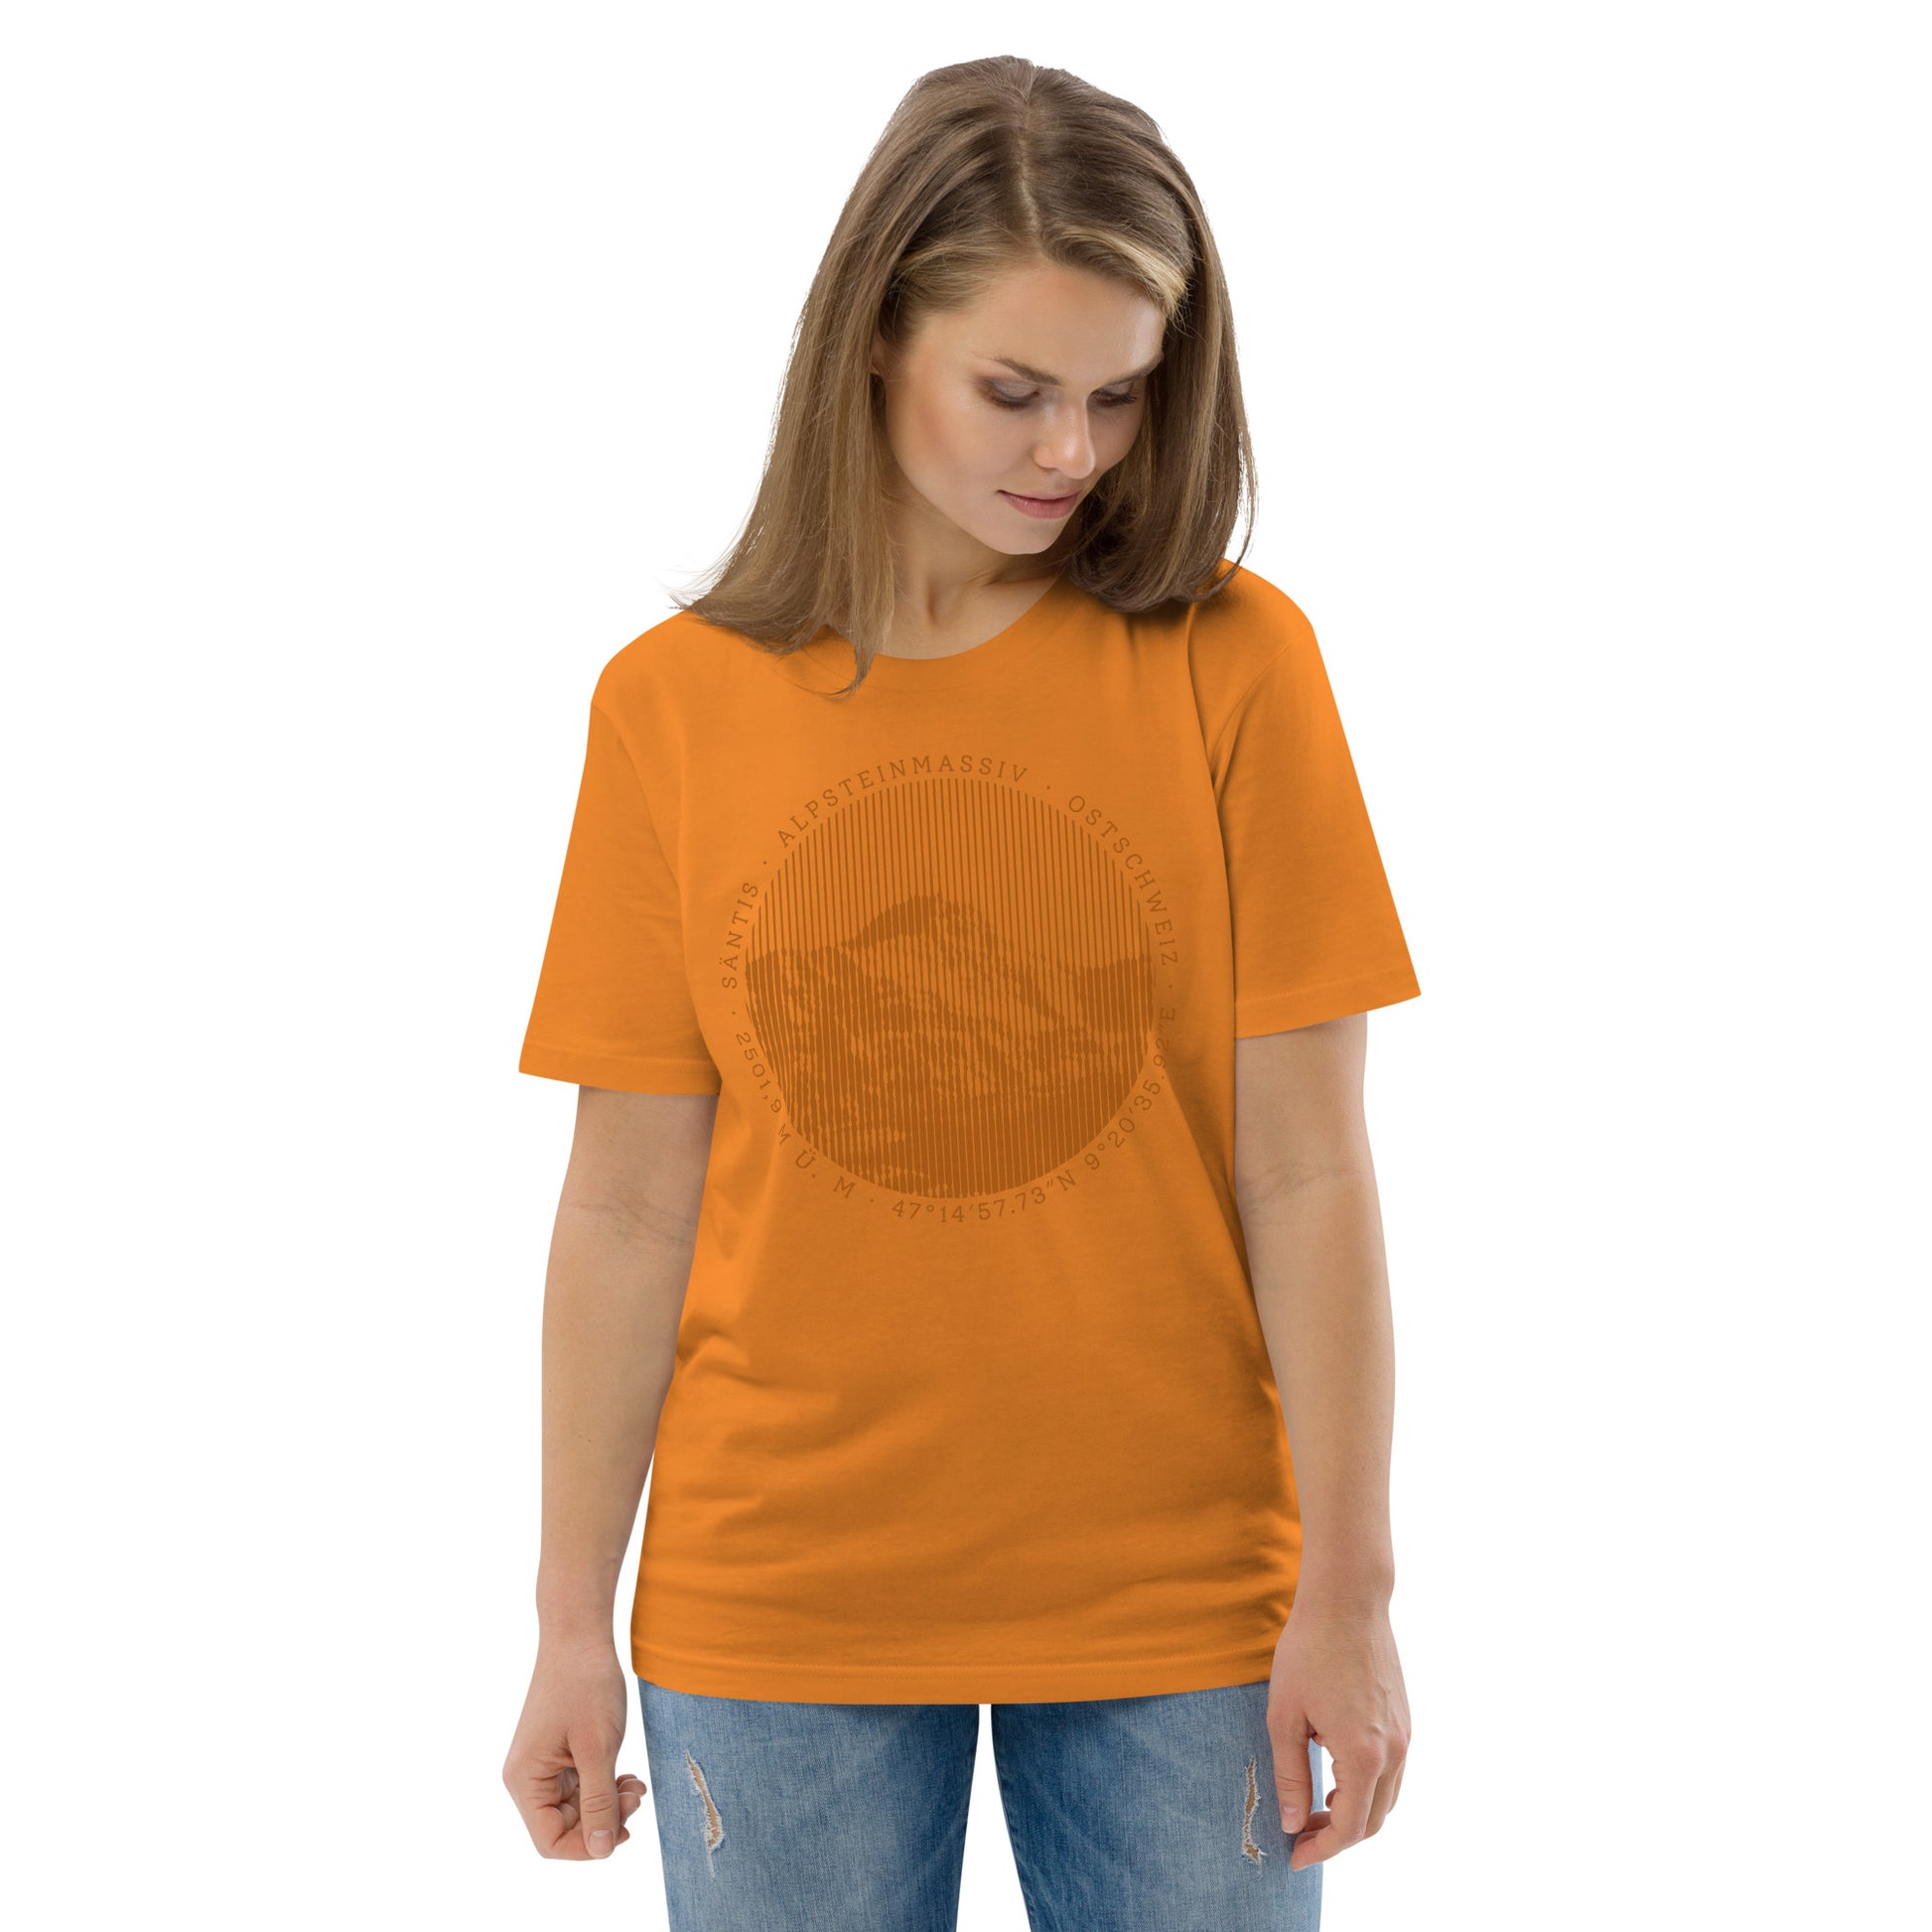 Diese Bergfreundin trägt ein oranges Damen T-Shirt aus Bio-Baumwolle von Vallada mit einem Aufdruck des Säntis-Gipfels. Damit drückt sie ihre Liebe zu den Alpen und den Appenzeller Alpen im Besonderen aus.